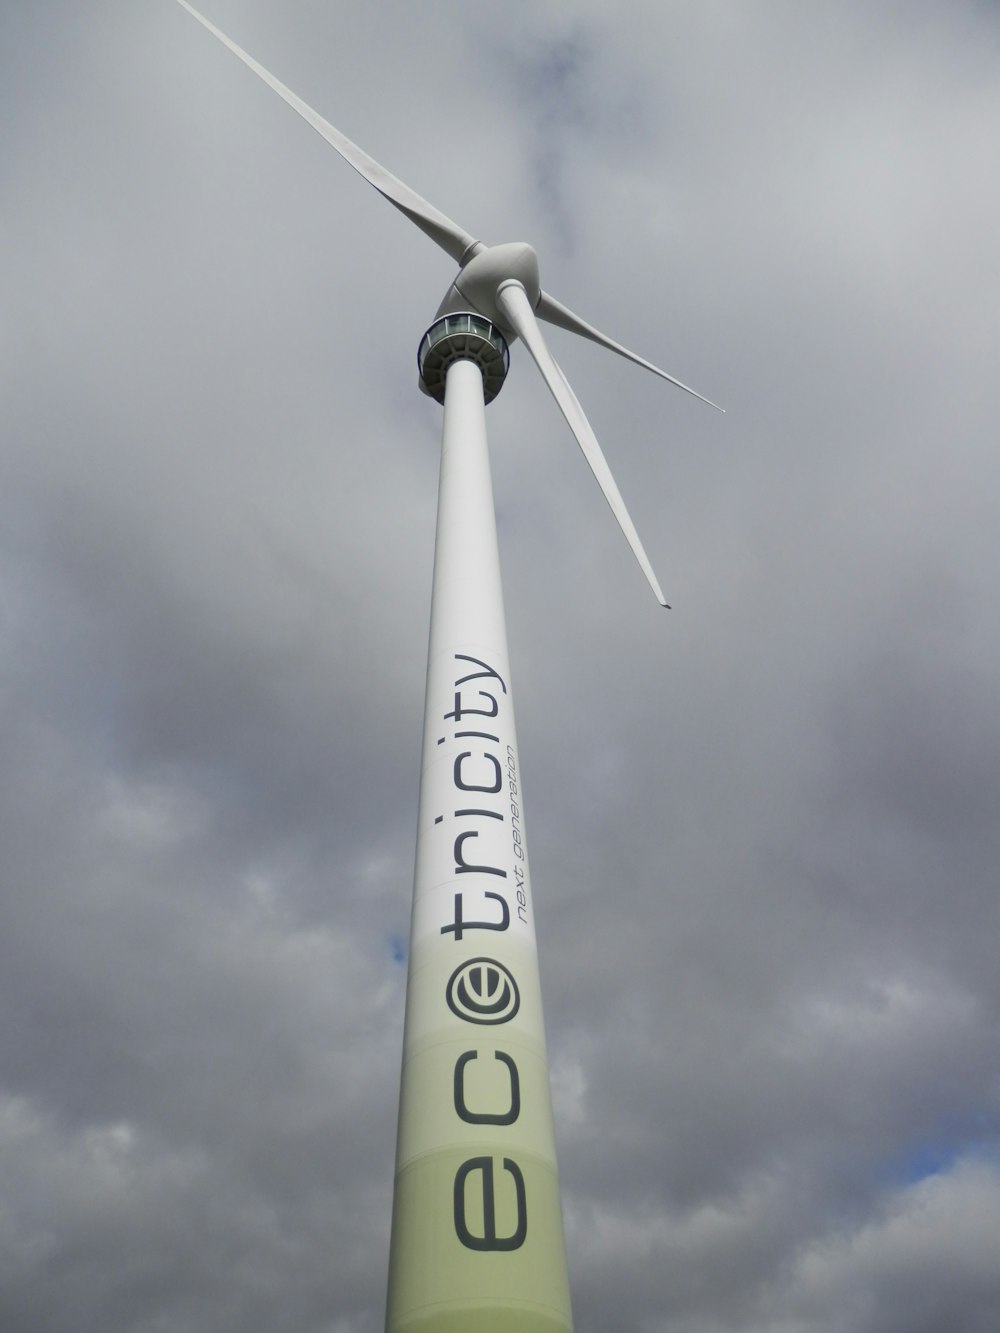 Weiße EC Tricity Windmühle unter bewölktem Himmel während des Tages